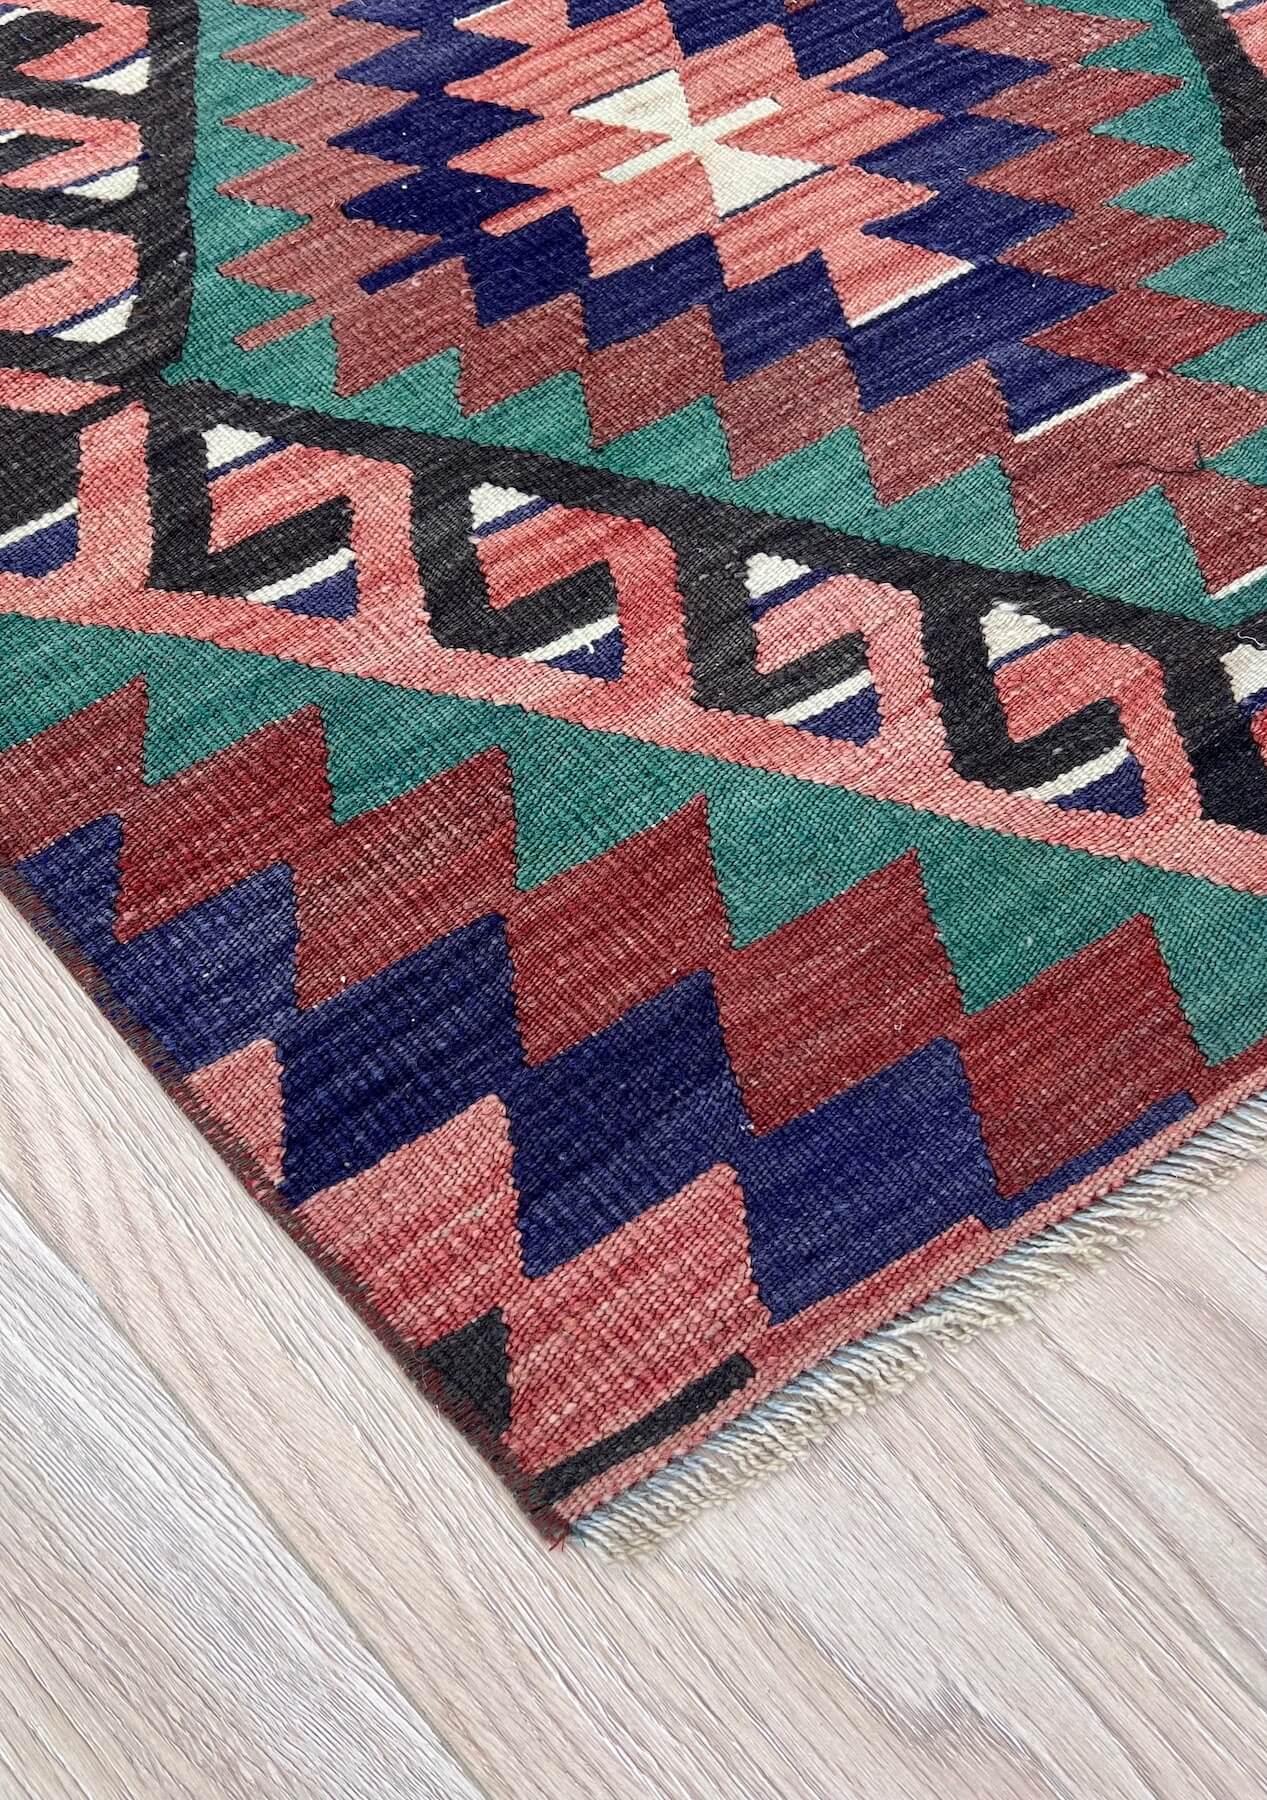 Essence - Multi Color Turkish Kilim Rug Runner - kudenrugs